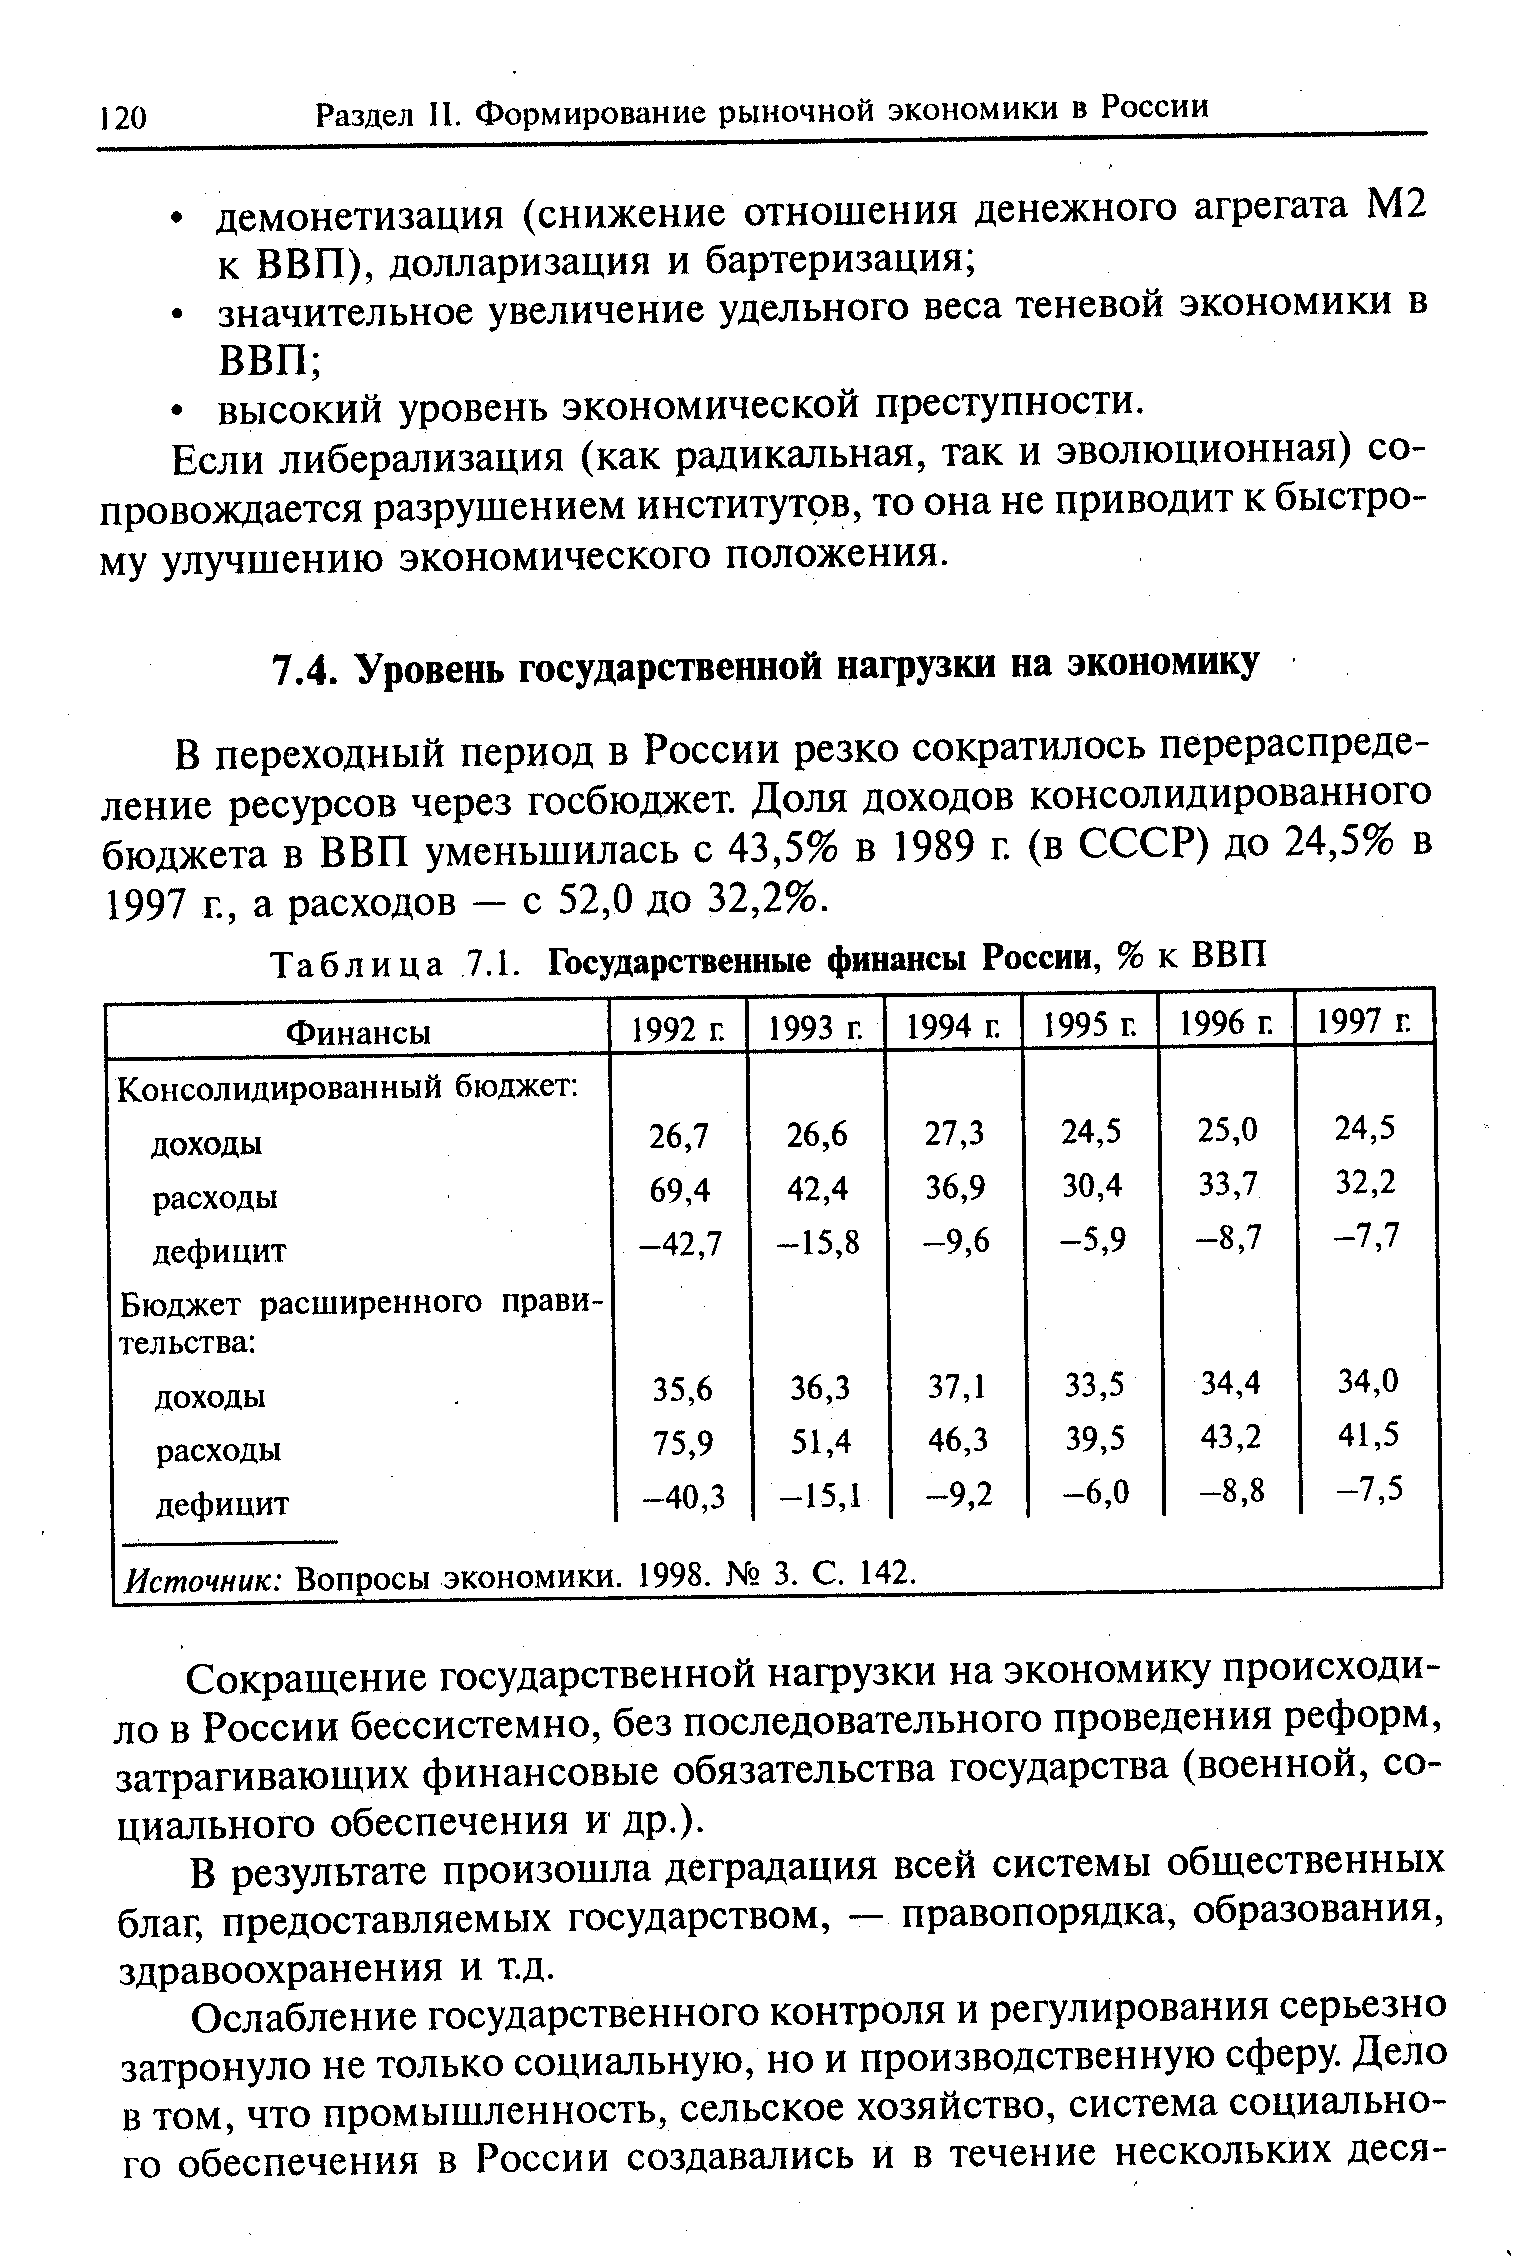 В переходный период в России резко сократилось перераспределение ресурсов через госбюджет. Доля доходов консолидированного бюджета в ВВП уменьшилась с 43,5% в 1989 г. (в СССР) до 24,5% в 1997 г., а расходов — с 52,0 до 32,2%.
